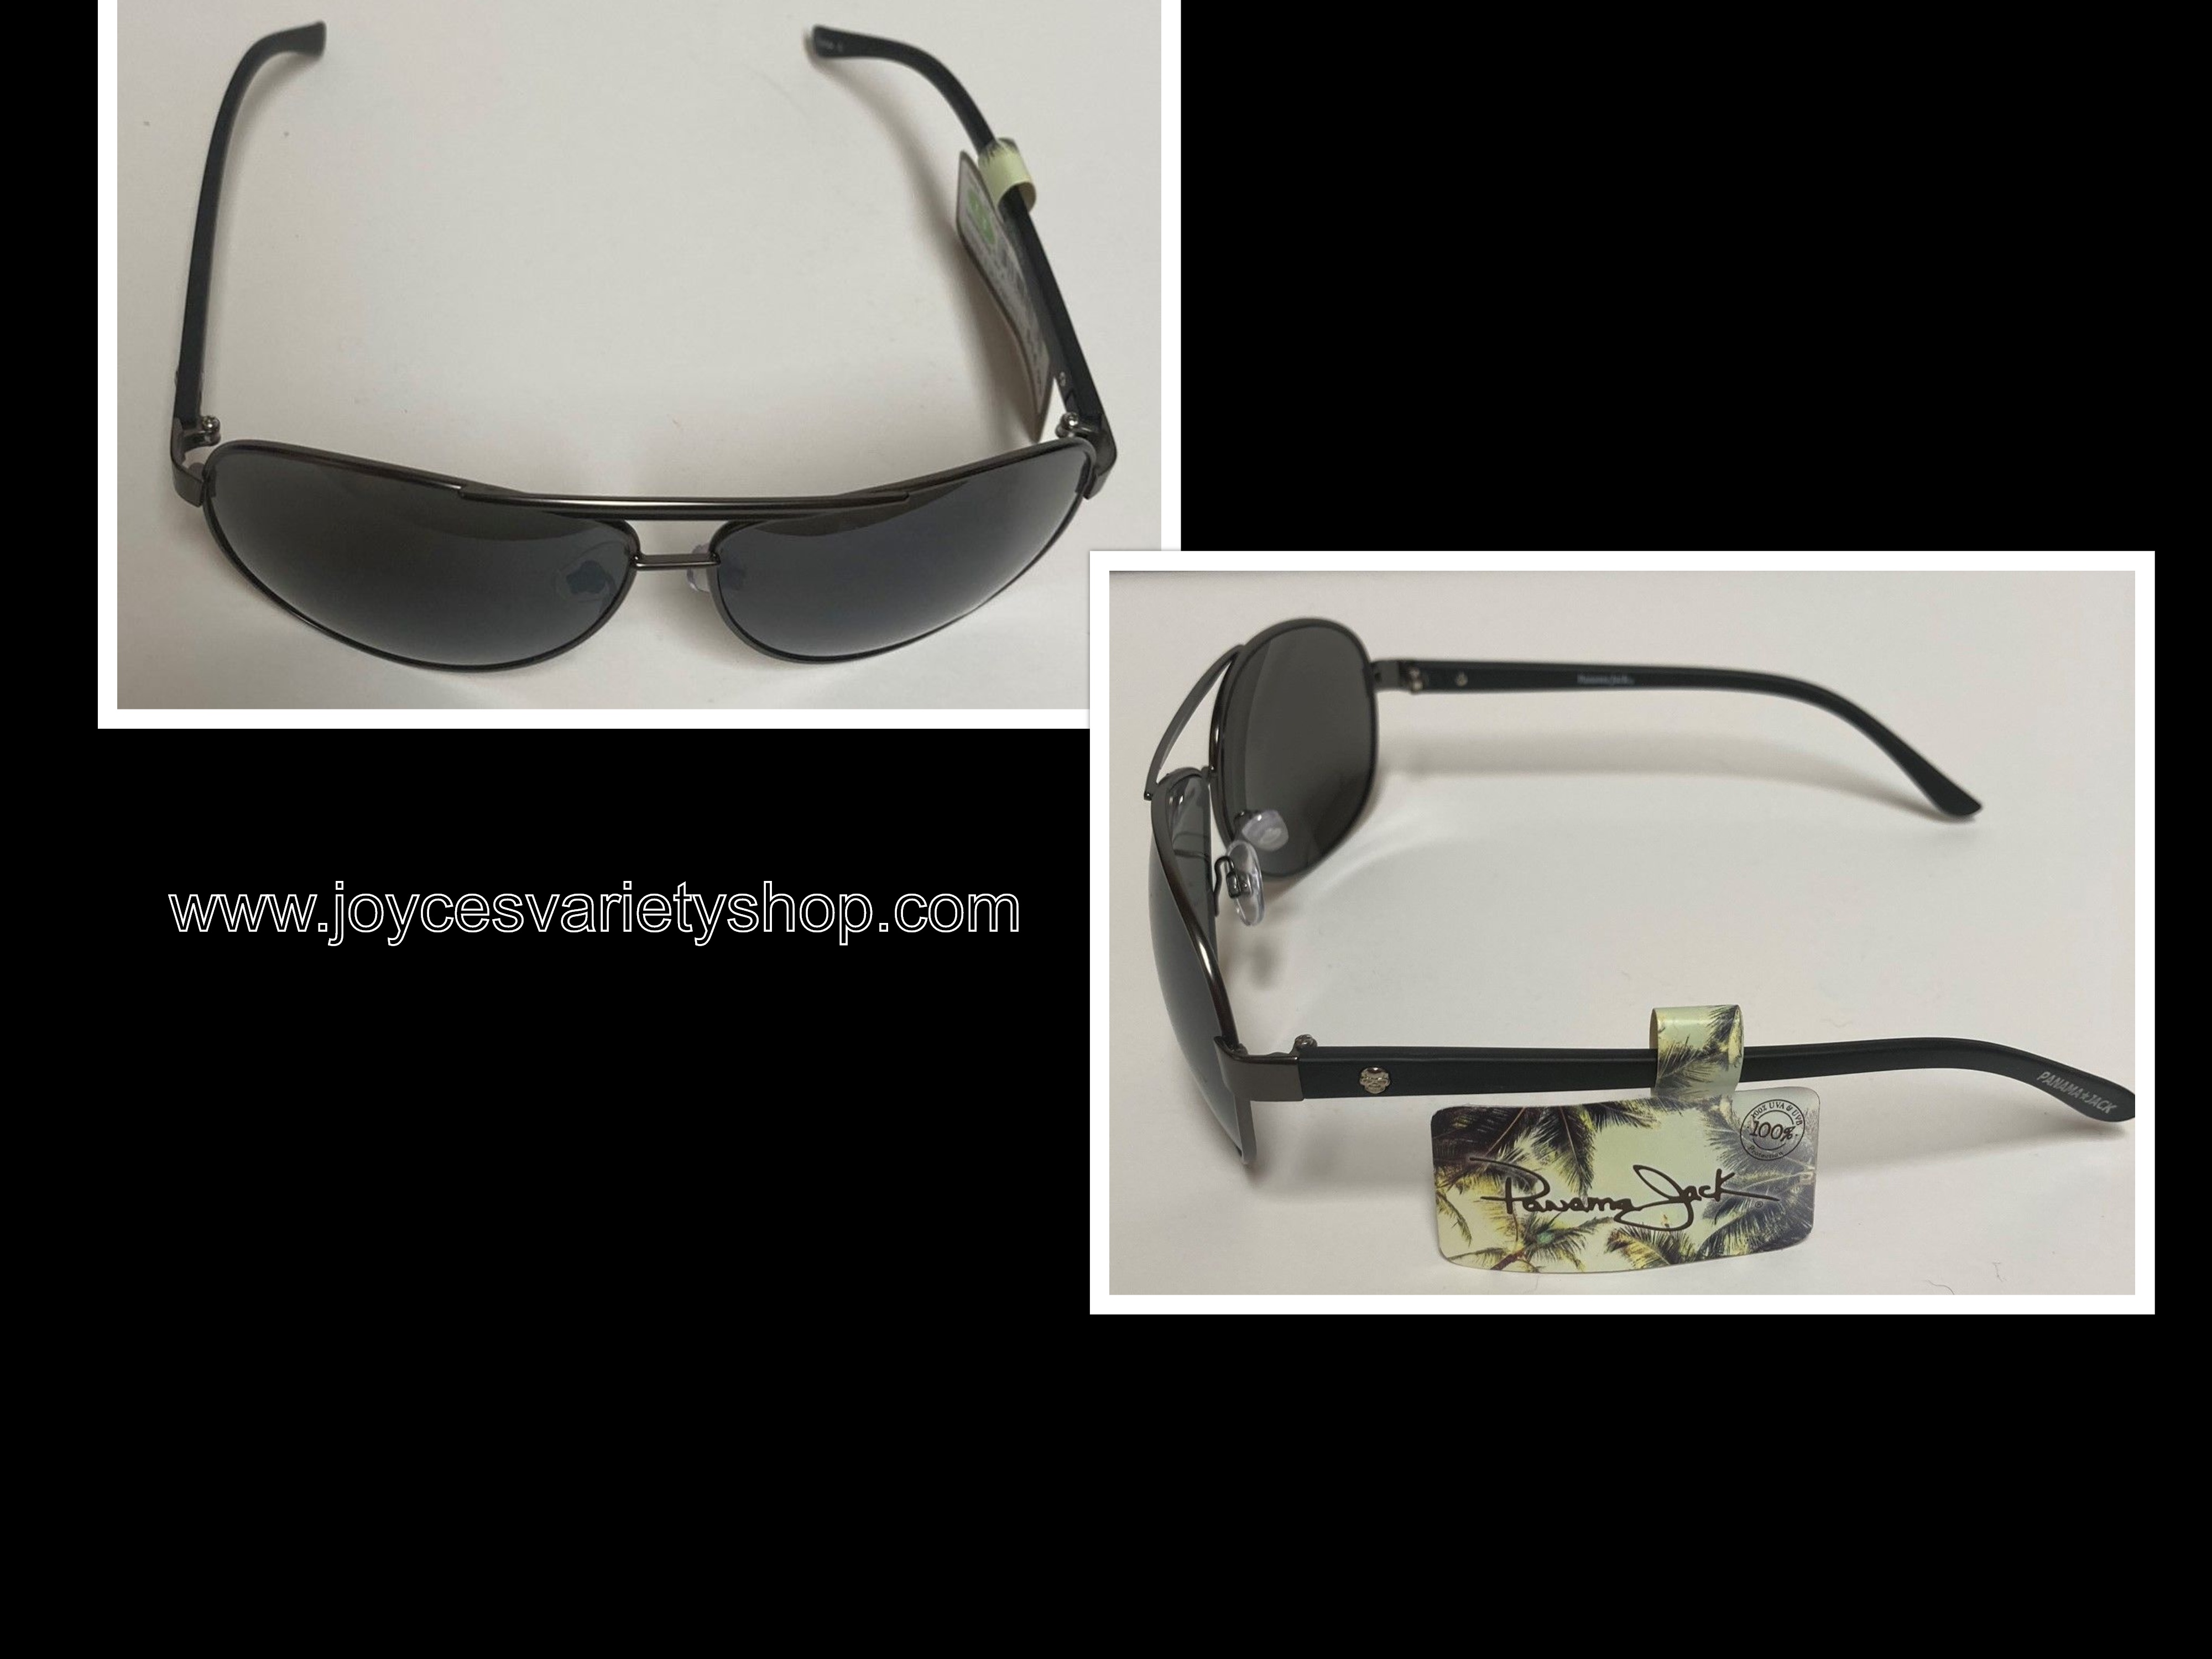 Panama Jack Sunglasses Black Metal 100% UVA UVB